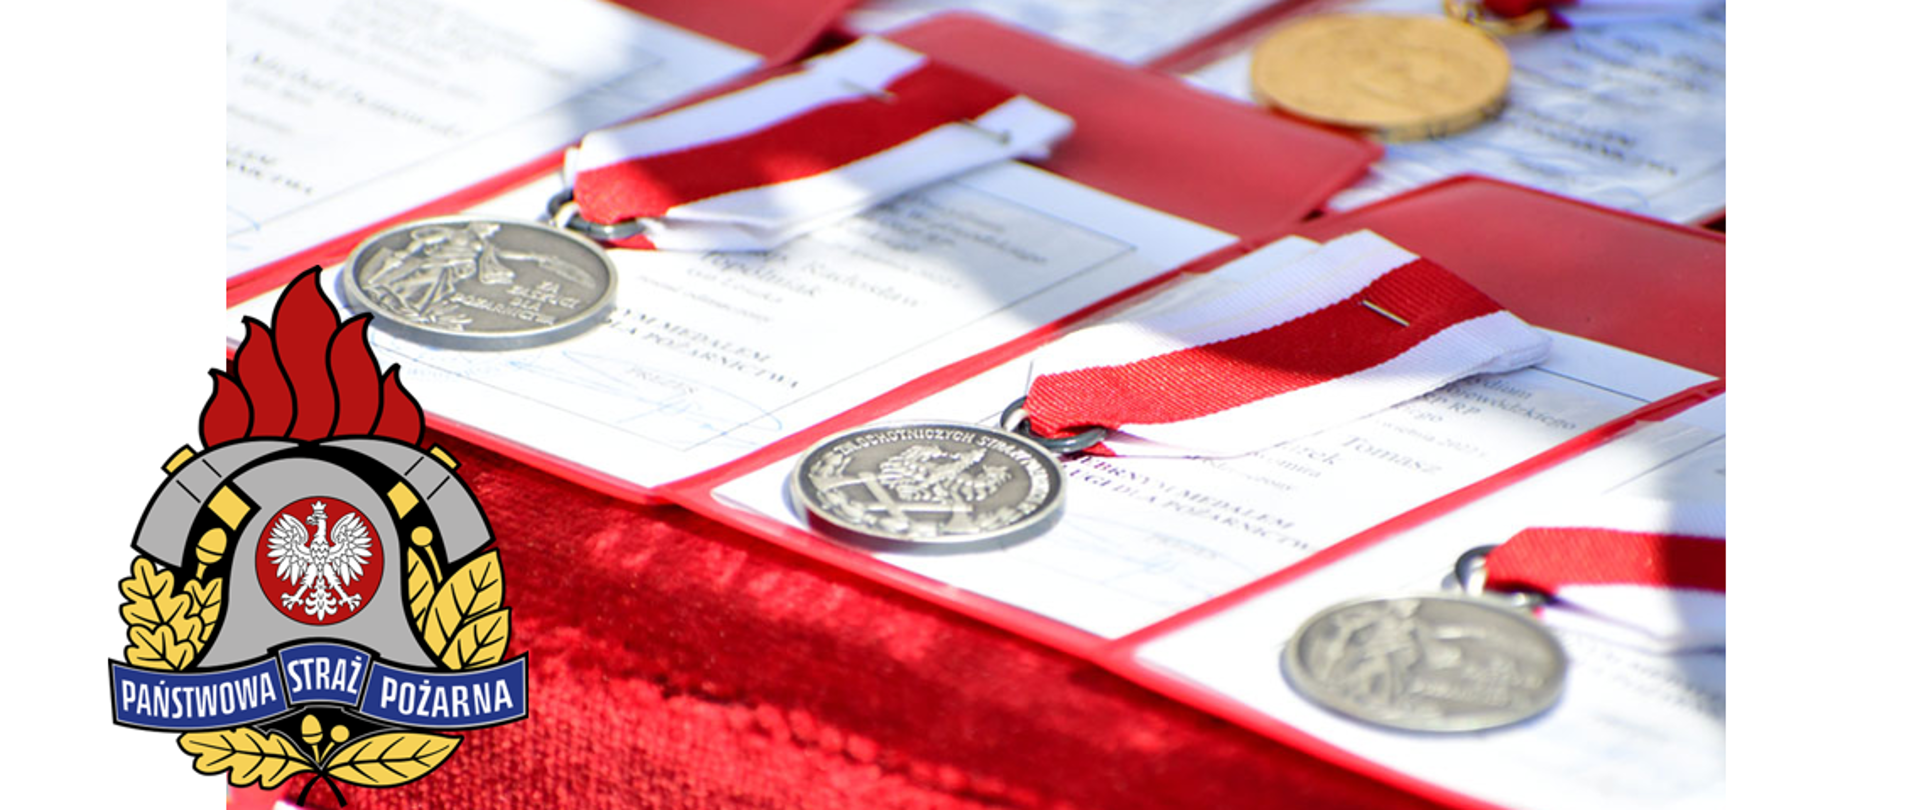 na czerwonym podszyciu widoczne złote i srebrne medale na okoliczność z okazji Powiatowych Obchodów Dnia Strażaka. W lewym dolnym rogu zamieszczone logo Państwowej Straży Pożarnej.